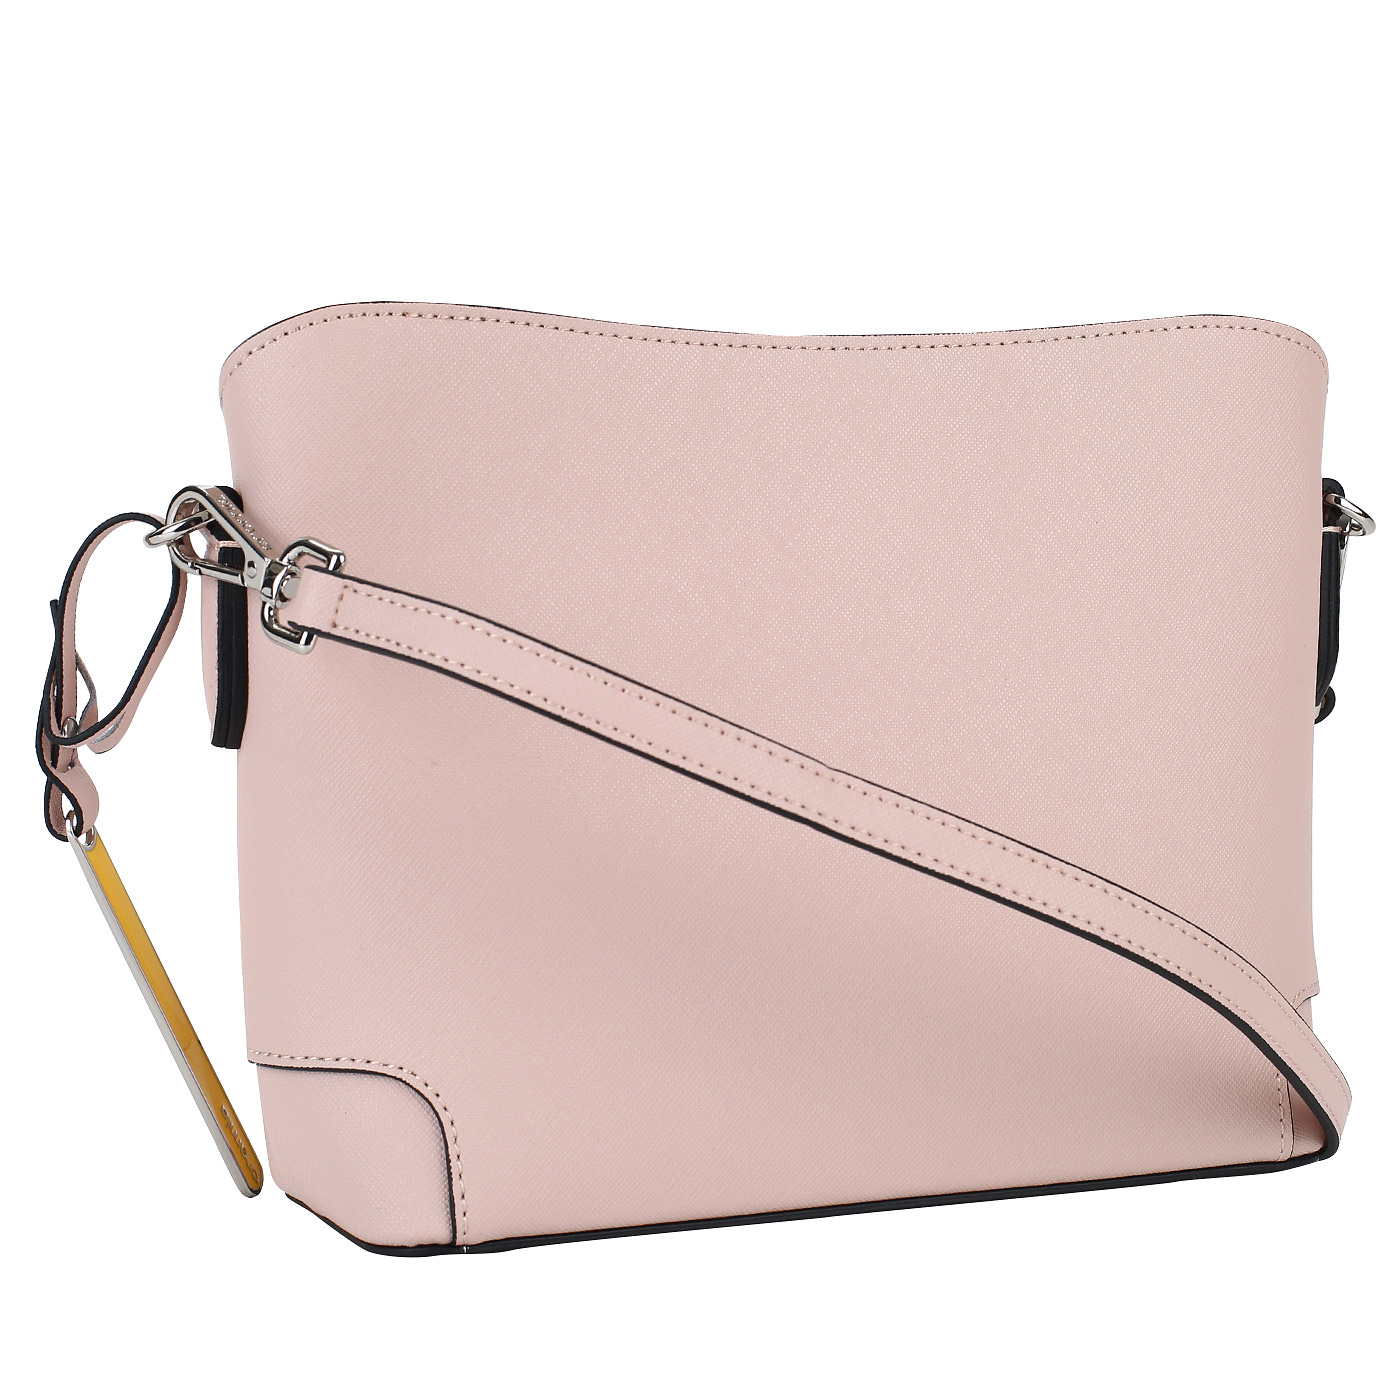 Аккуратная сумочка из розового сафьяна Cromia Wisper